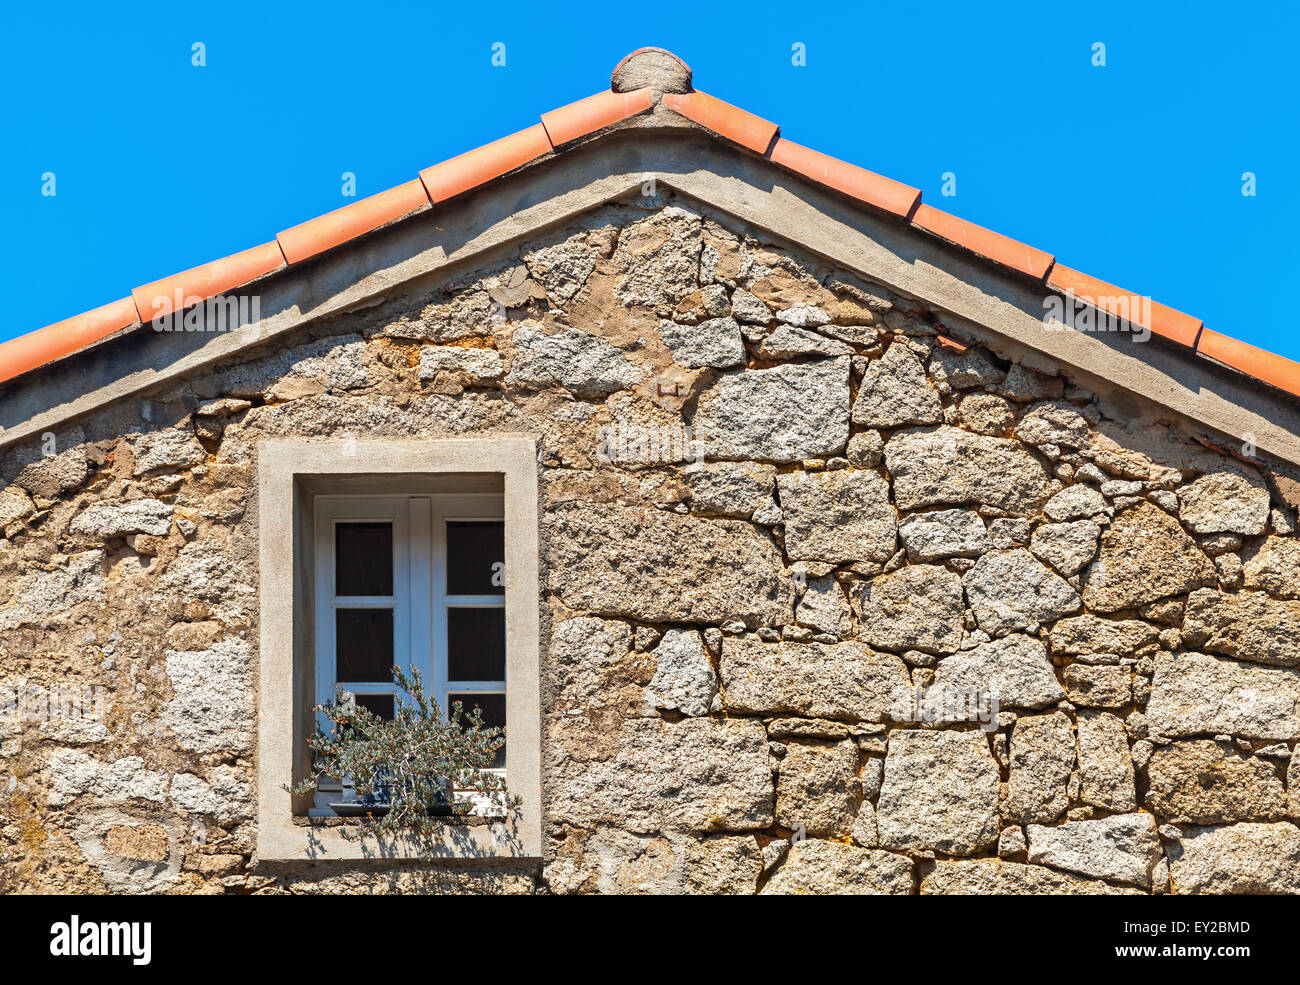 La vie ancienne façade de maison fragment, mur de pierre avec fenêtre sous le toit en tuiles rouges, Corse, France Banque D'Images